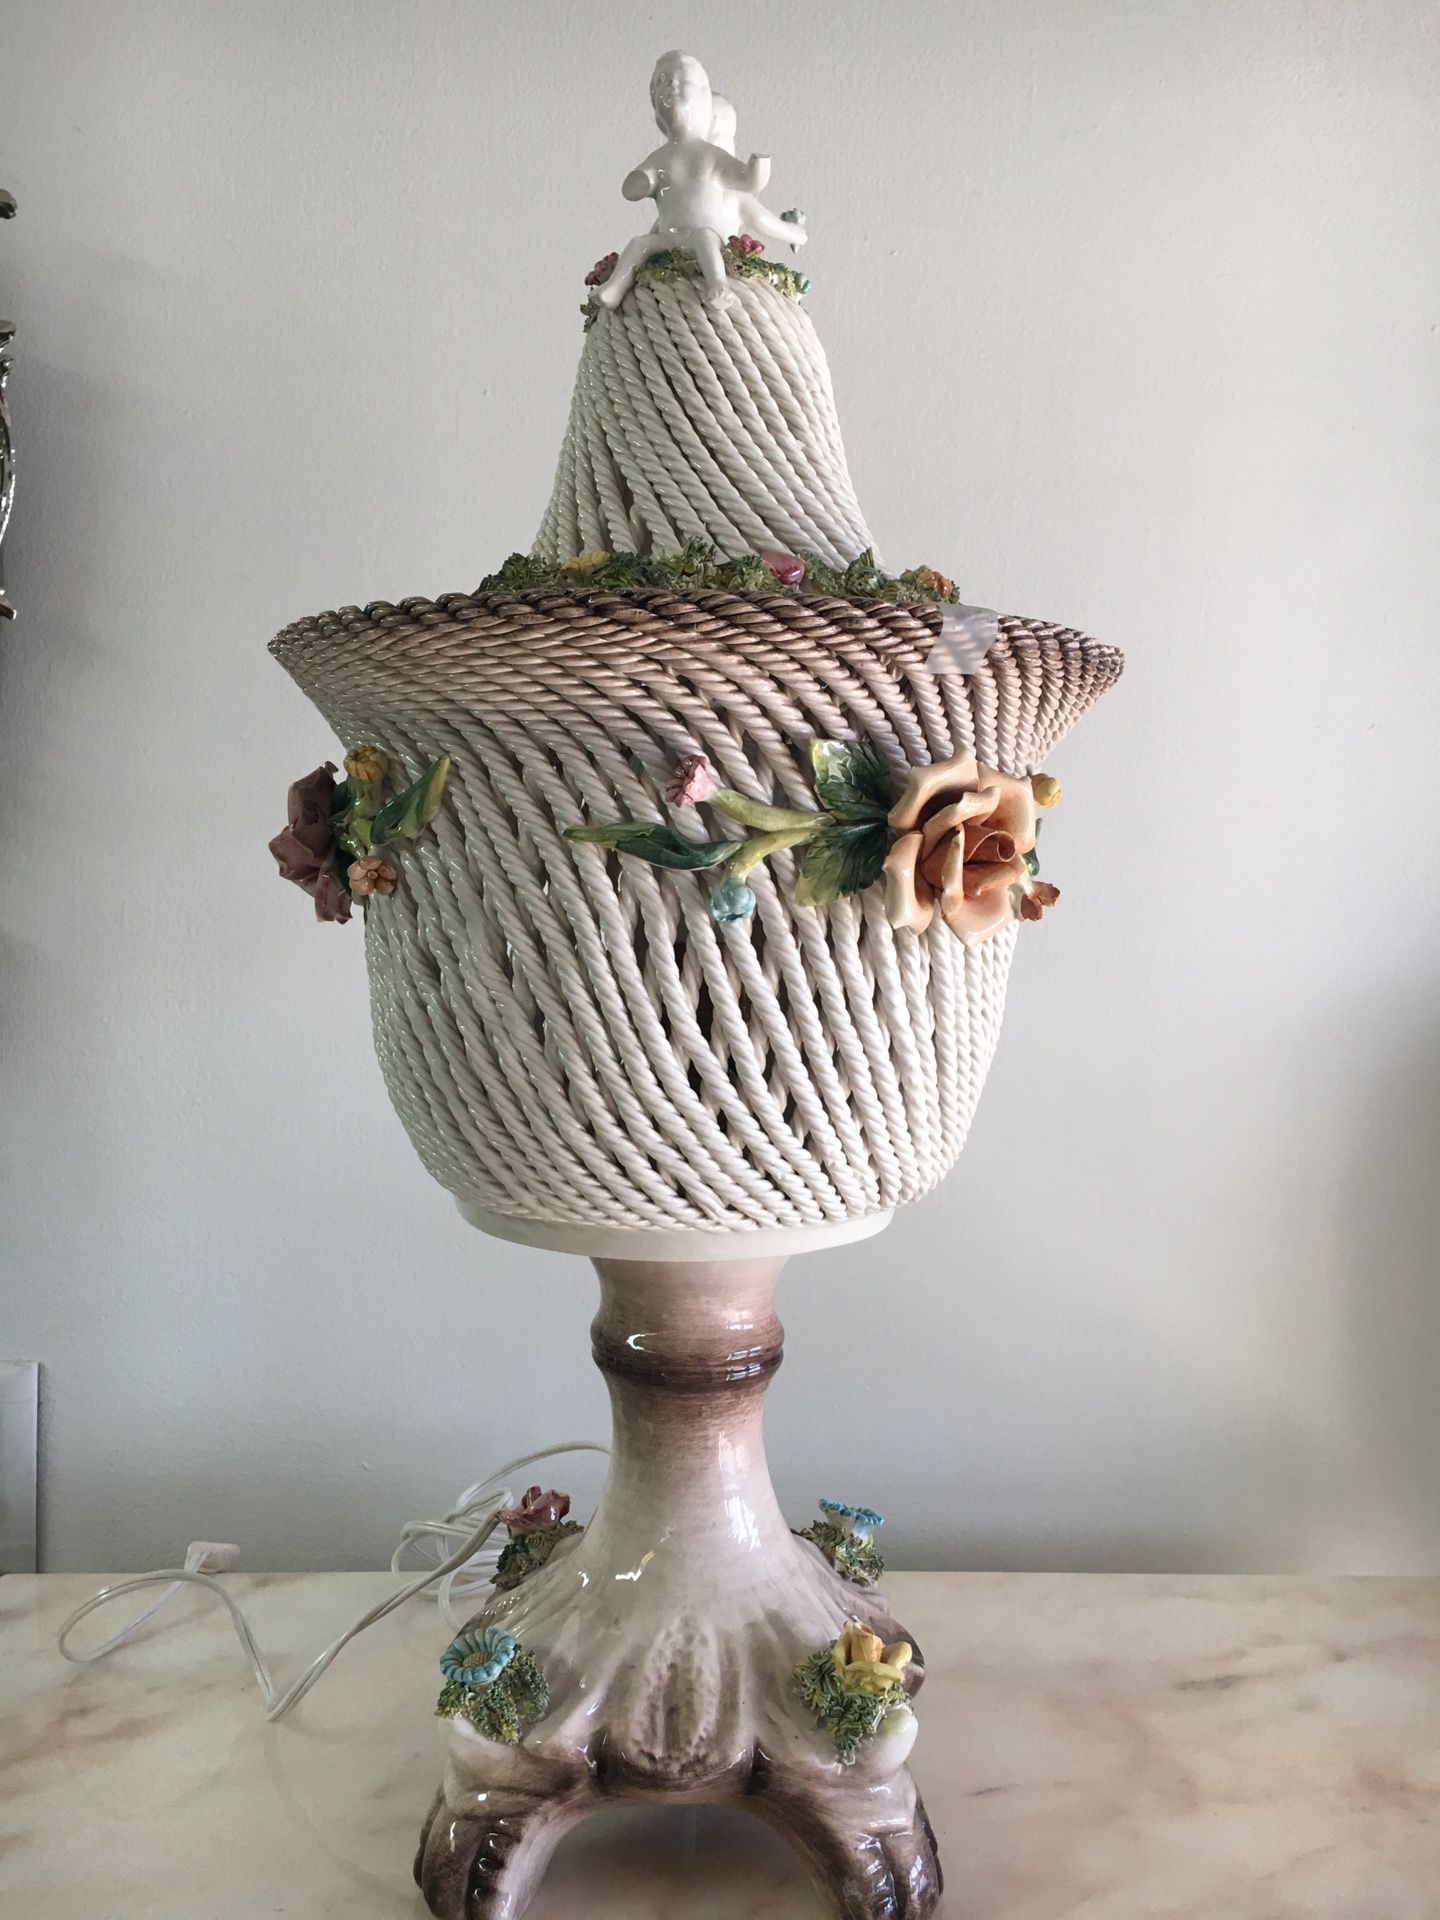 Italian ceramic lamp